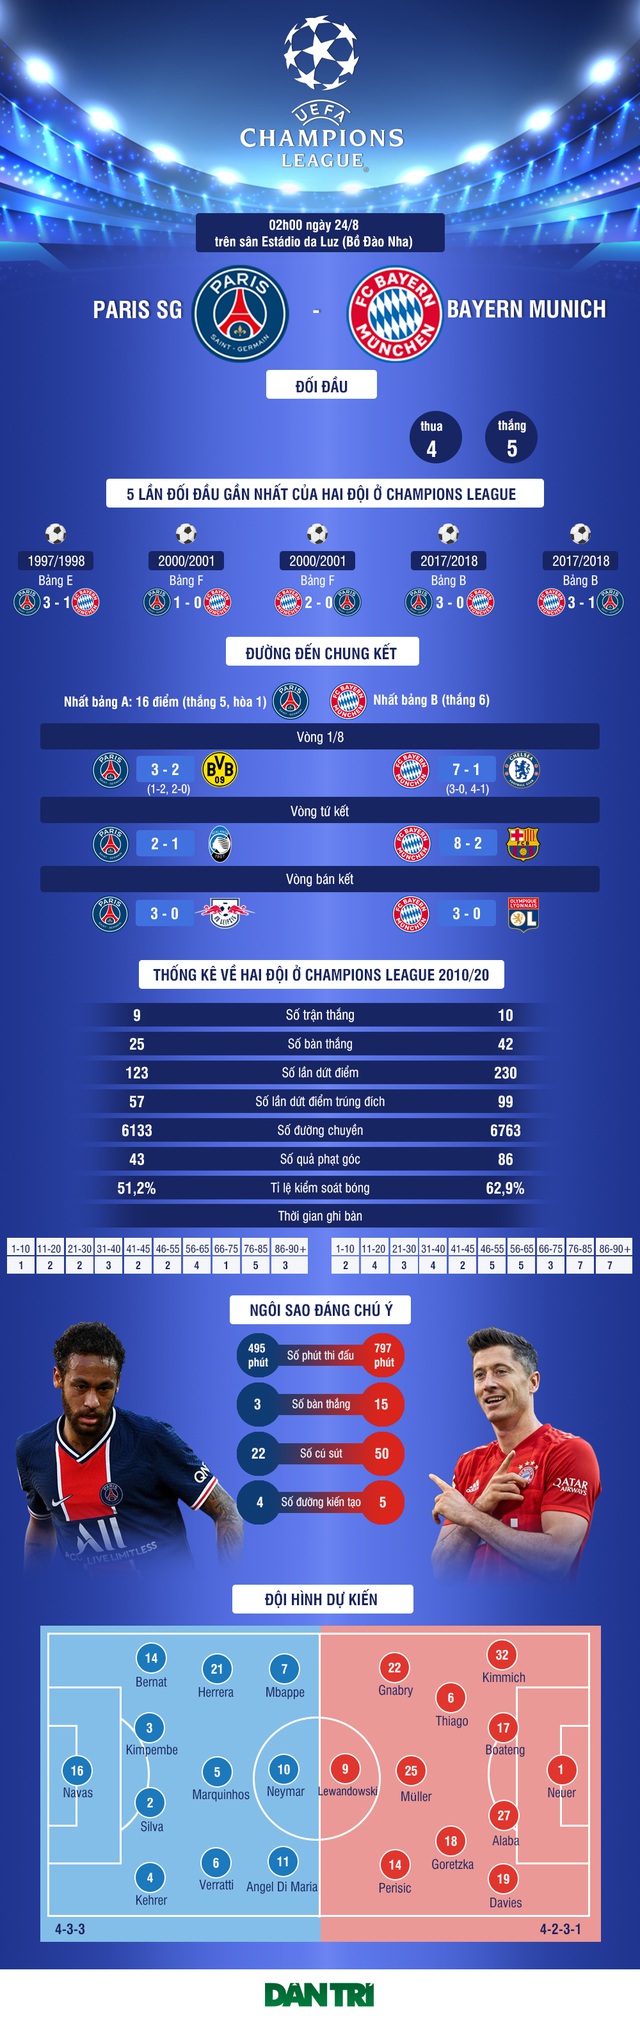 Chung kết Champions League: Trận chiến của những mặt đối lập